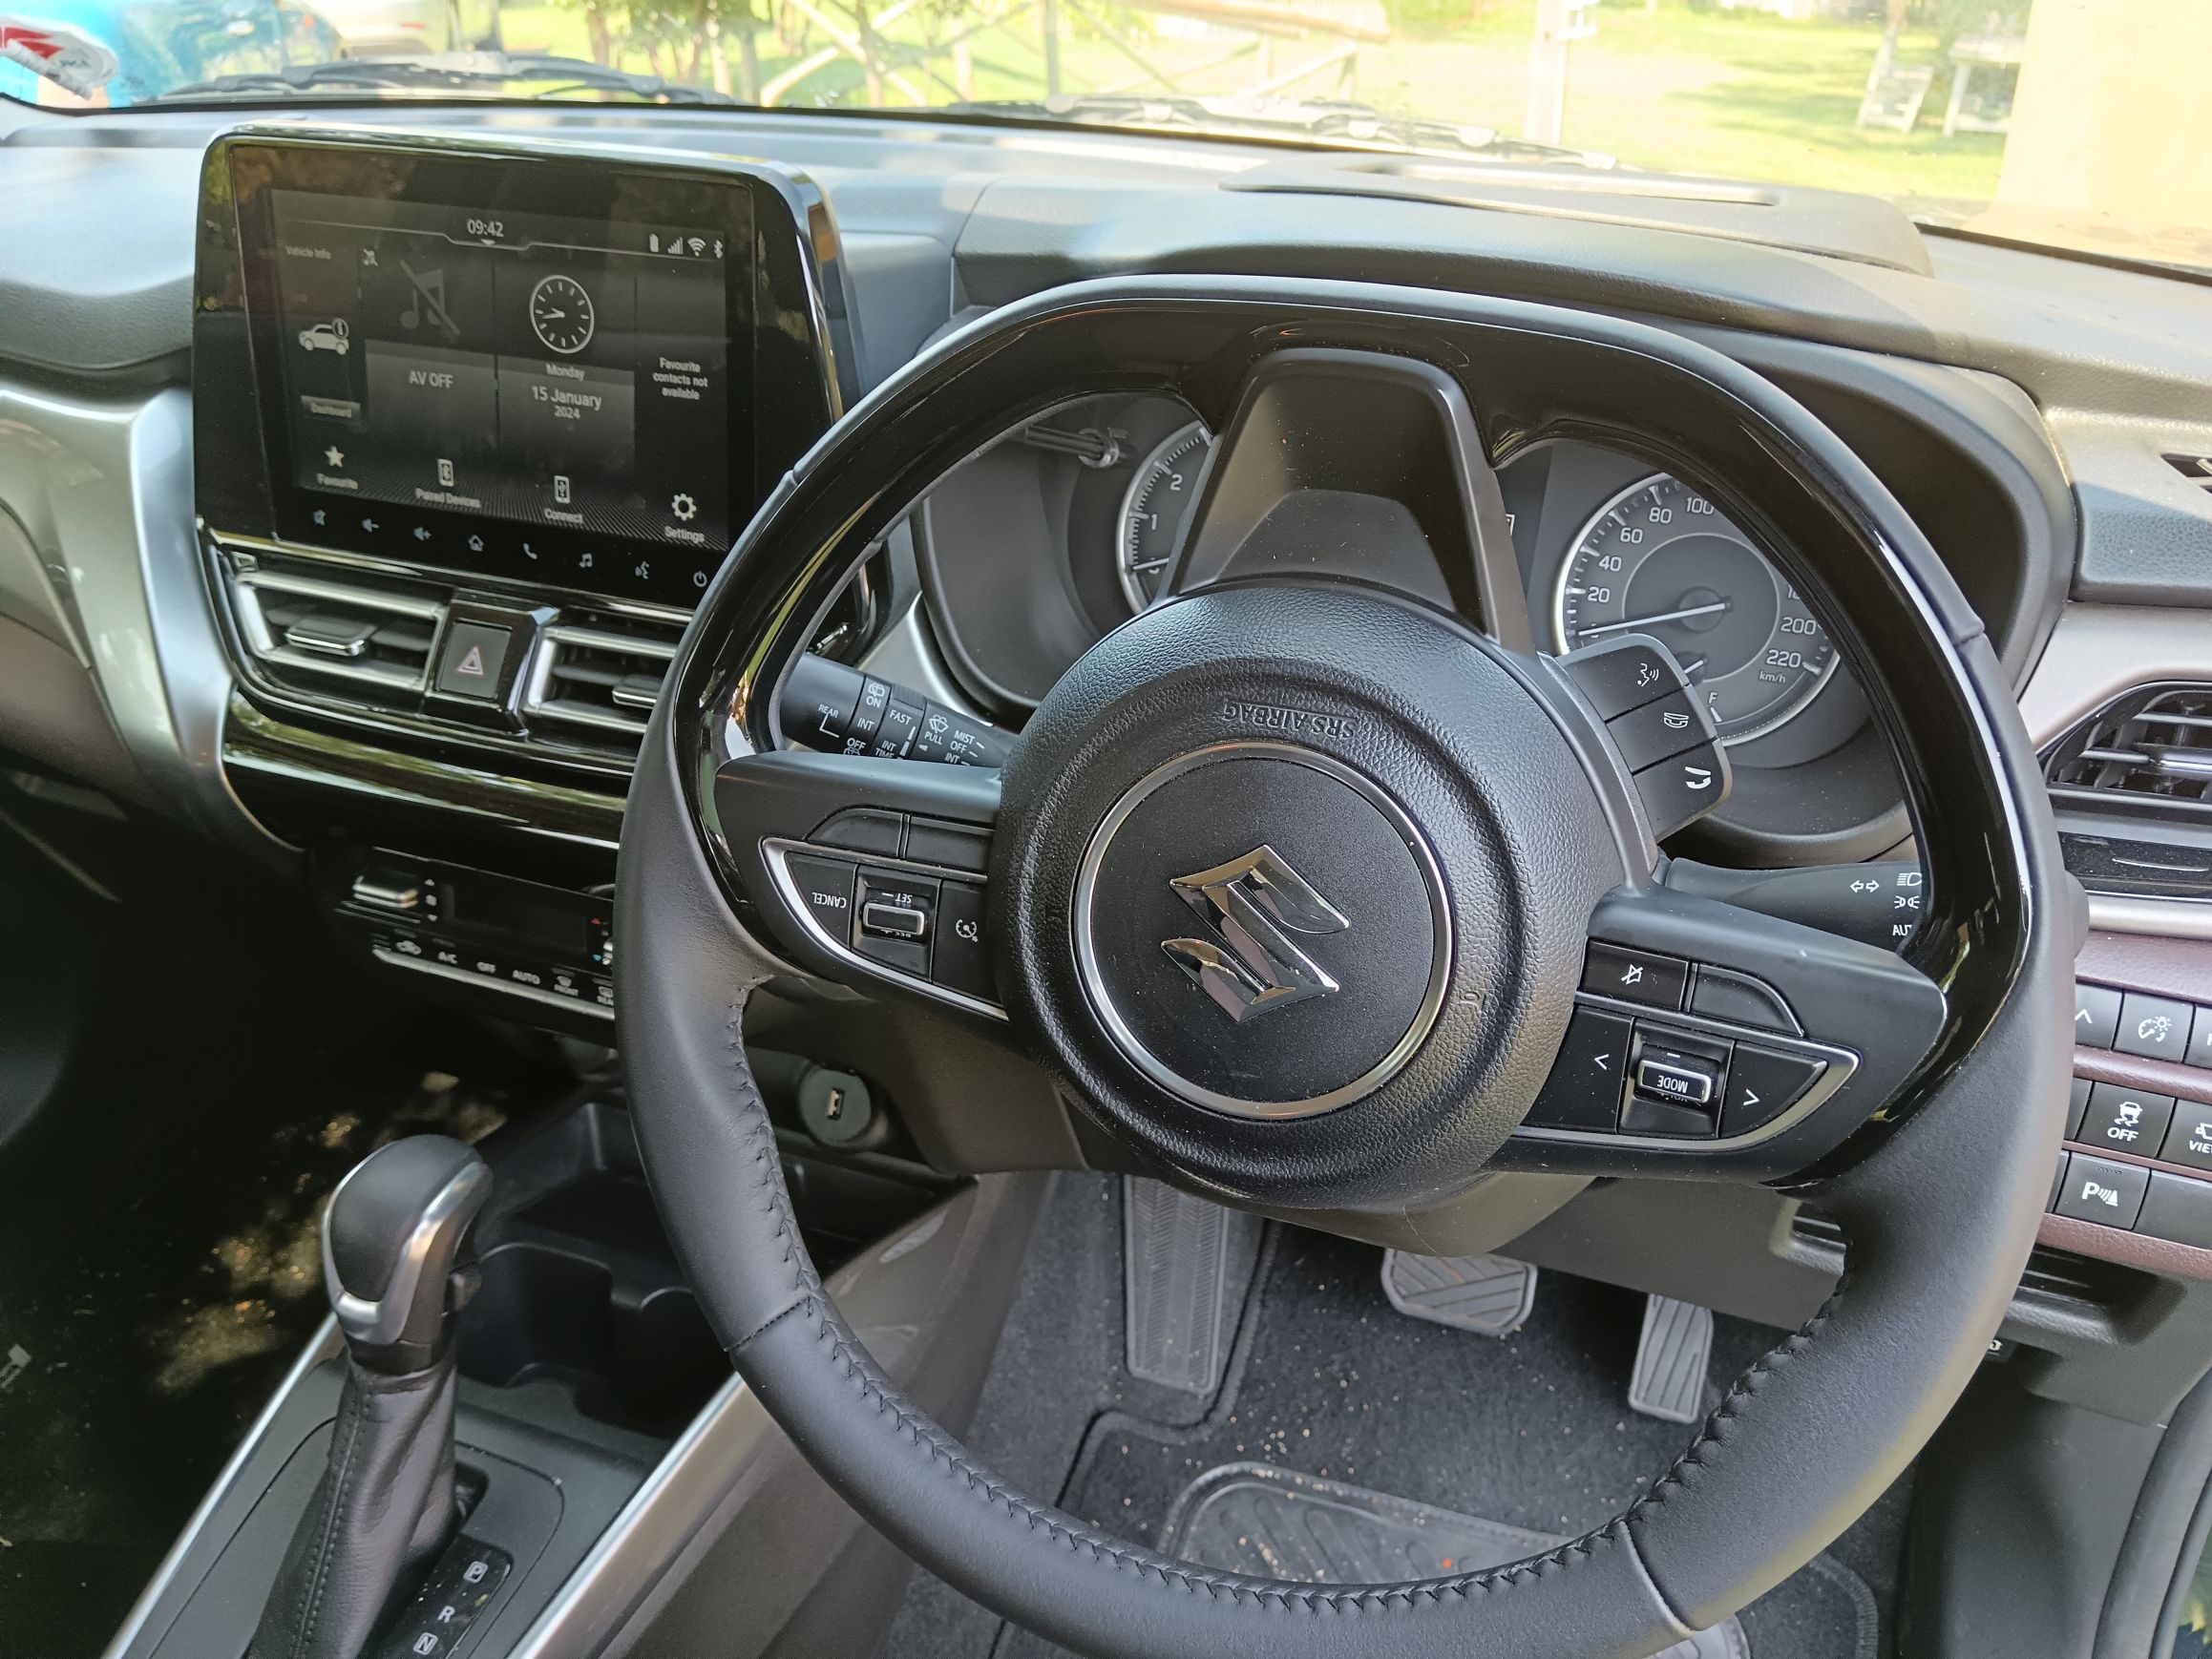 Interior view of the Suzuki Fronx